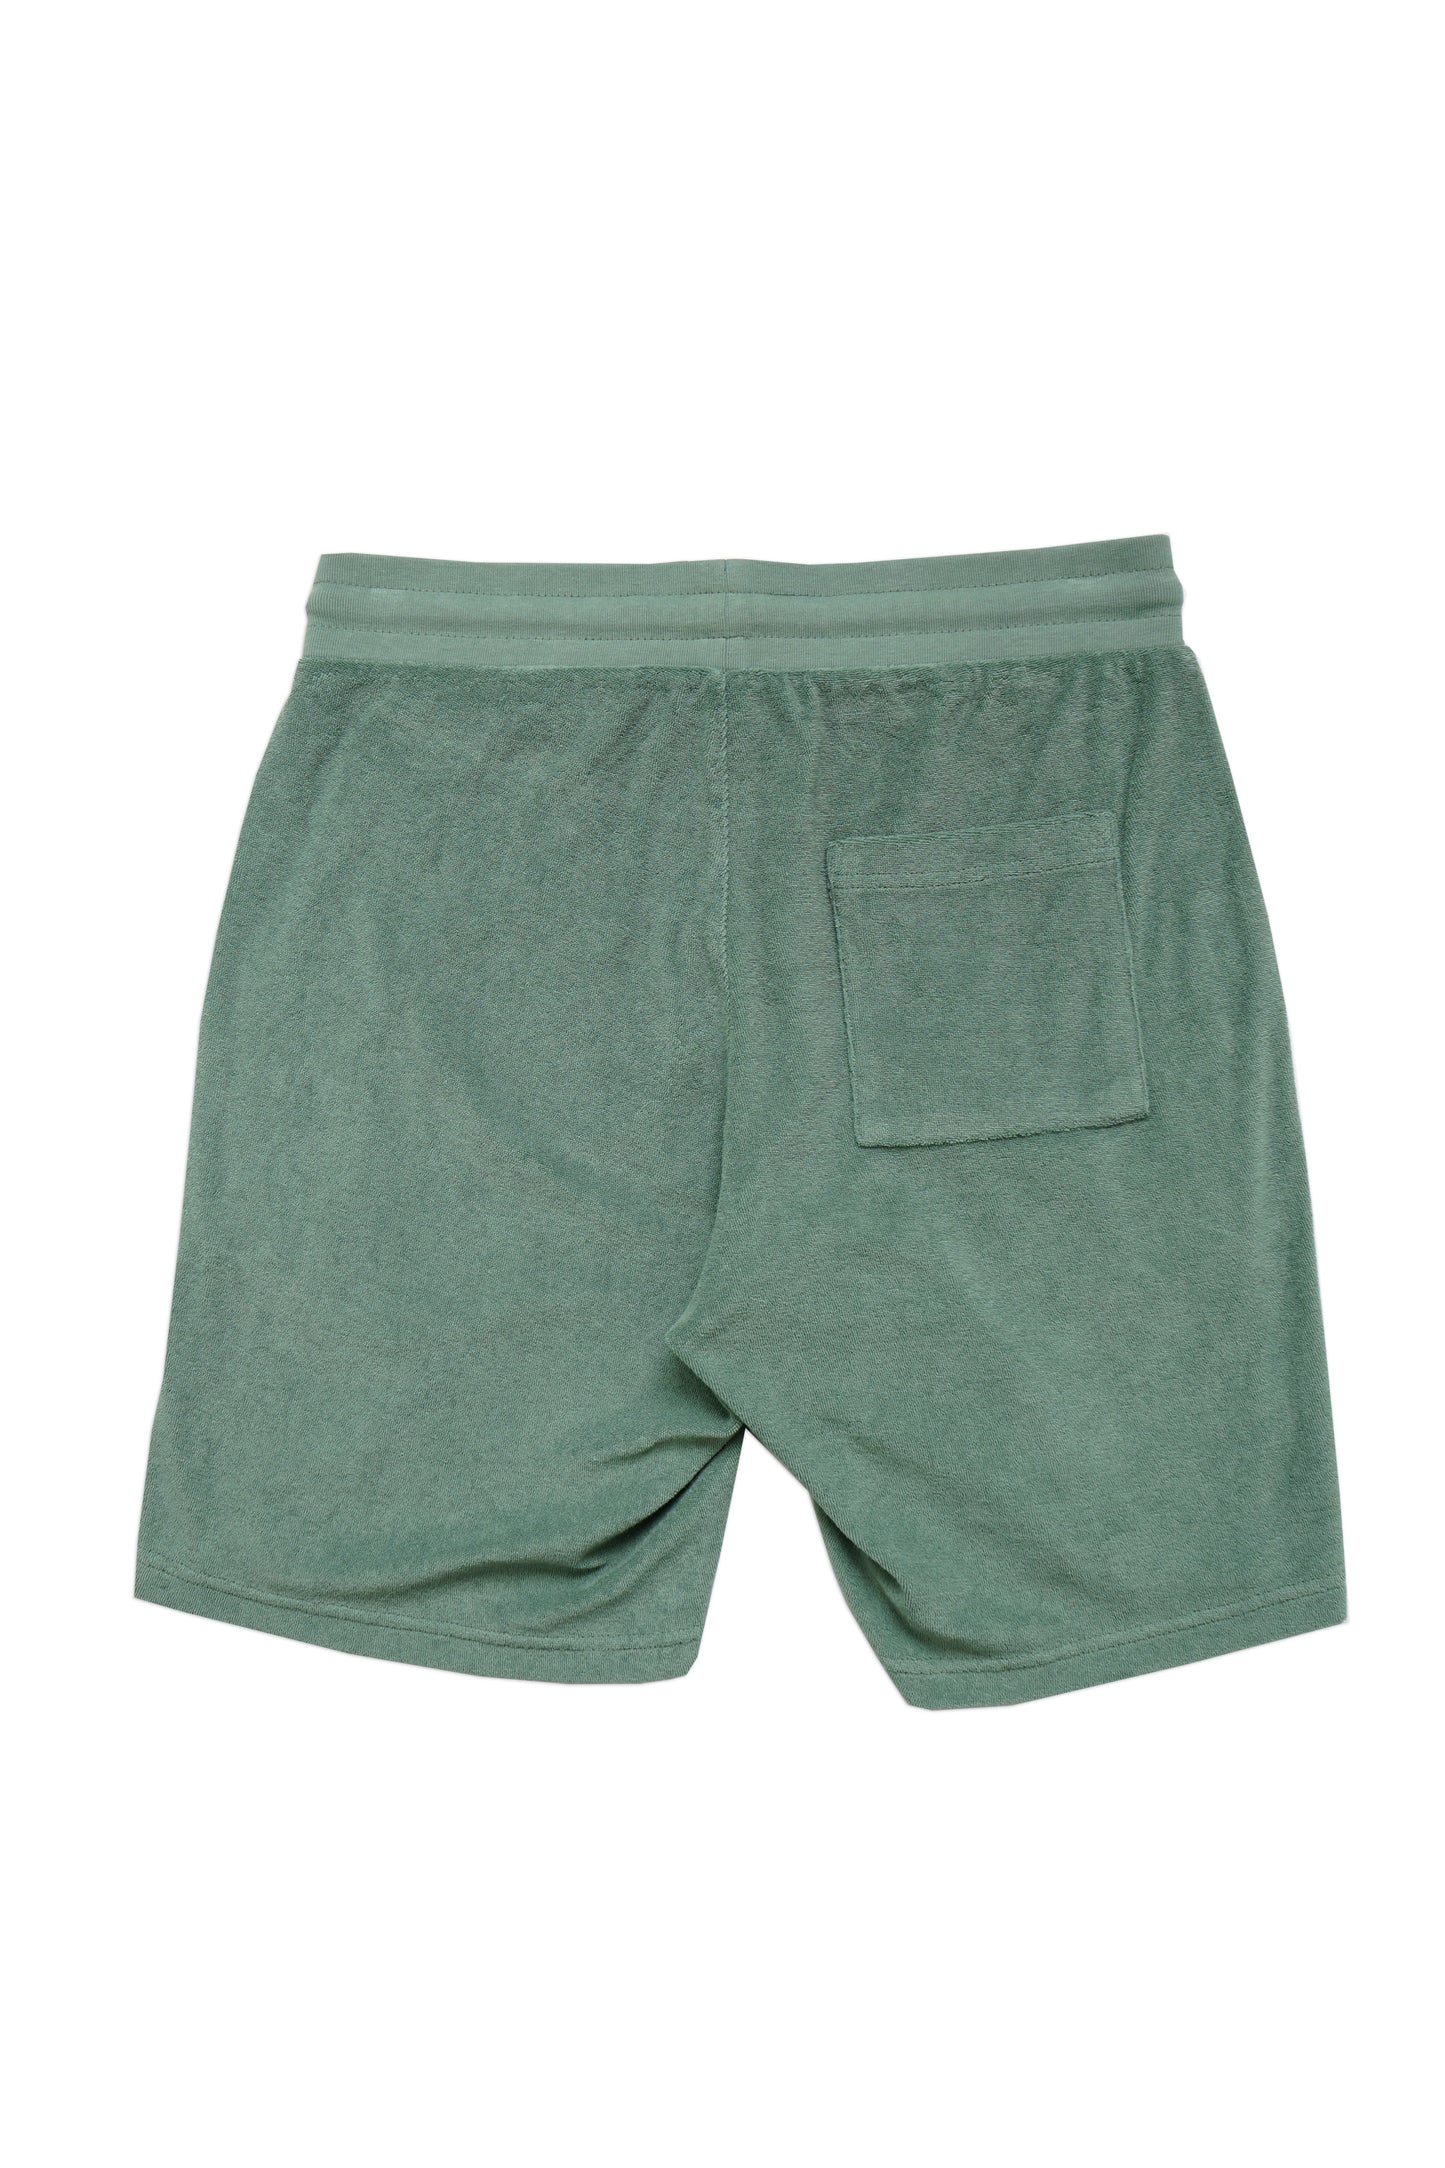 Silas Northern Green Shorts